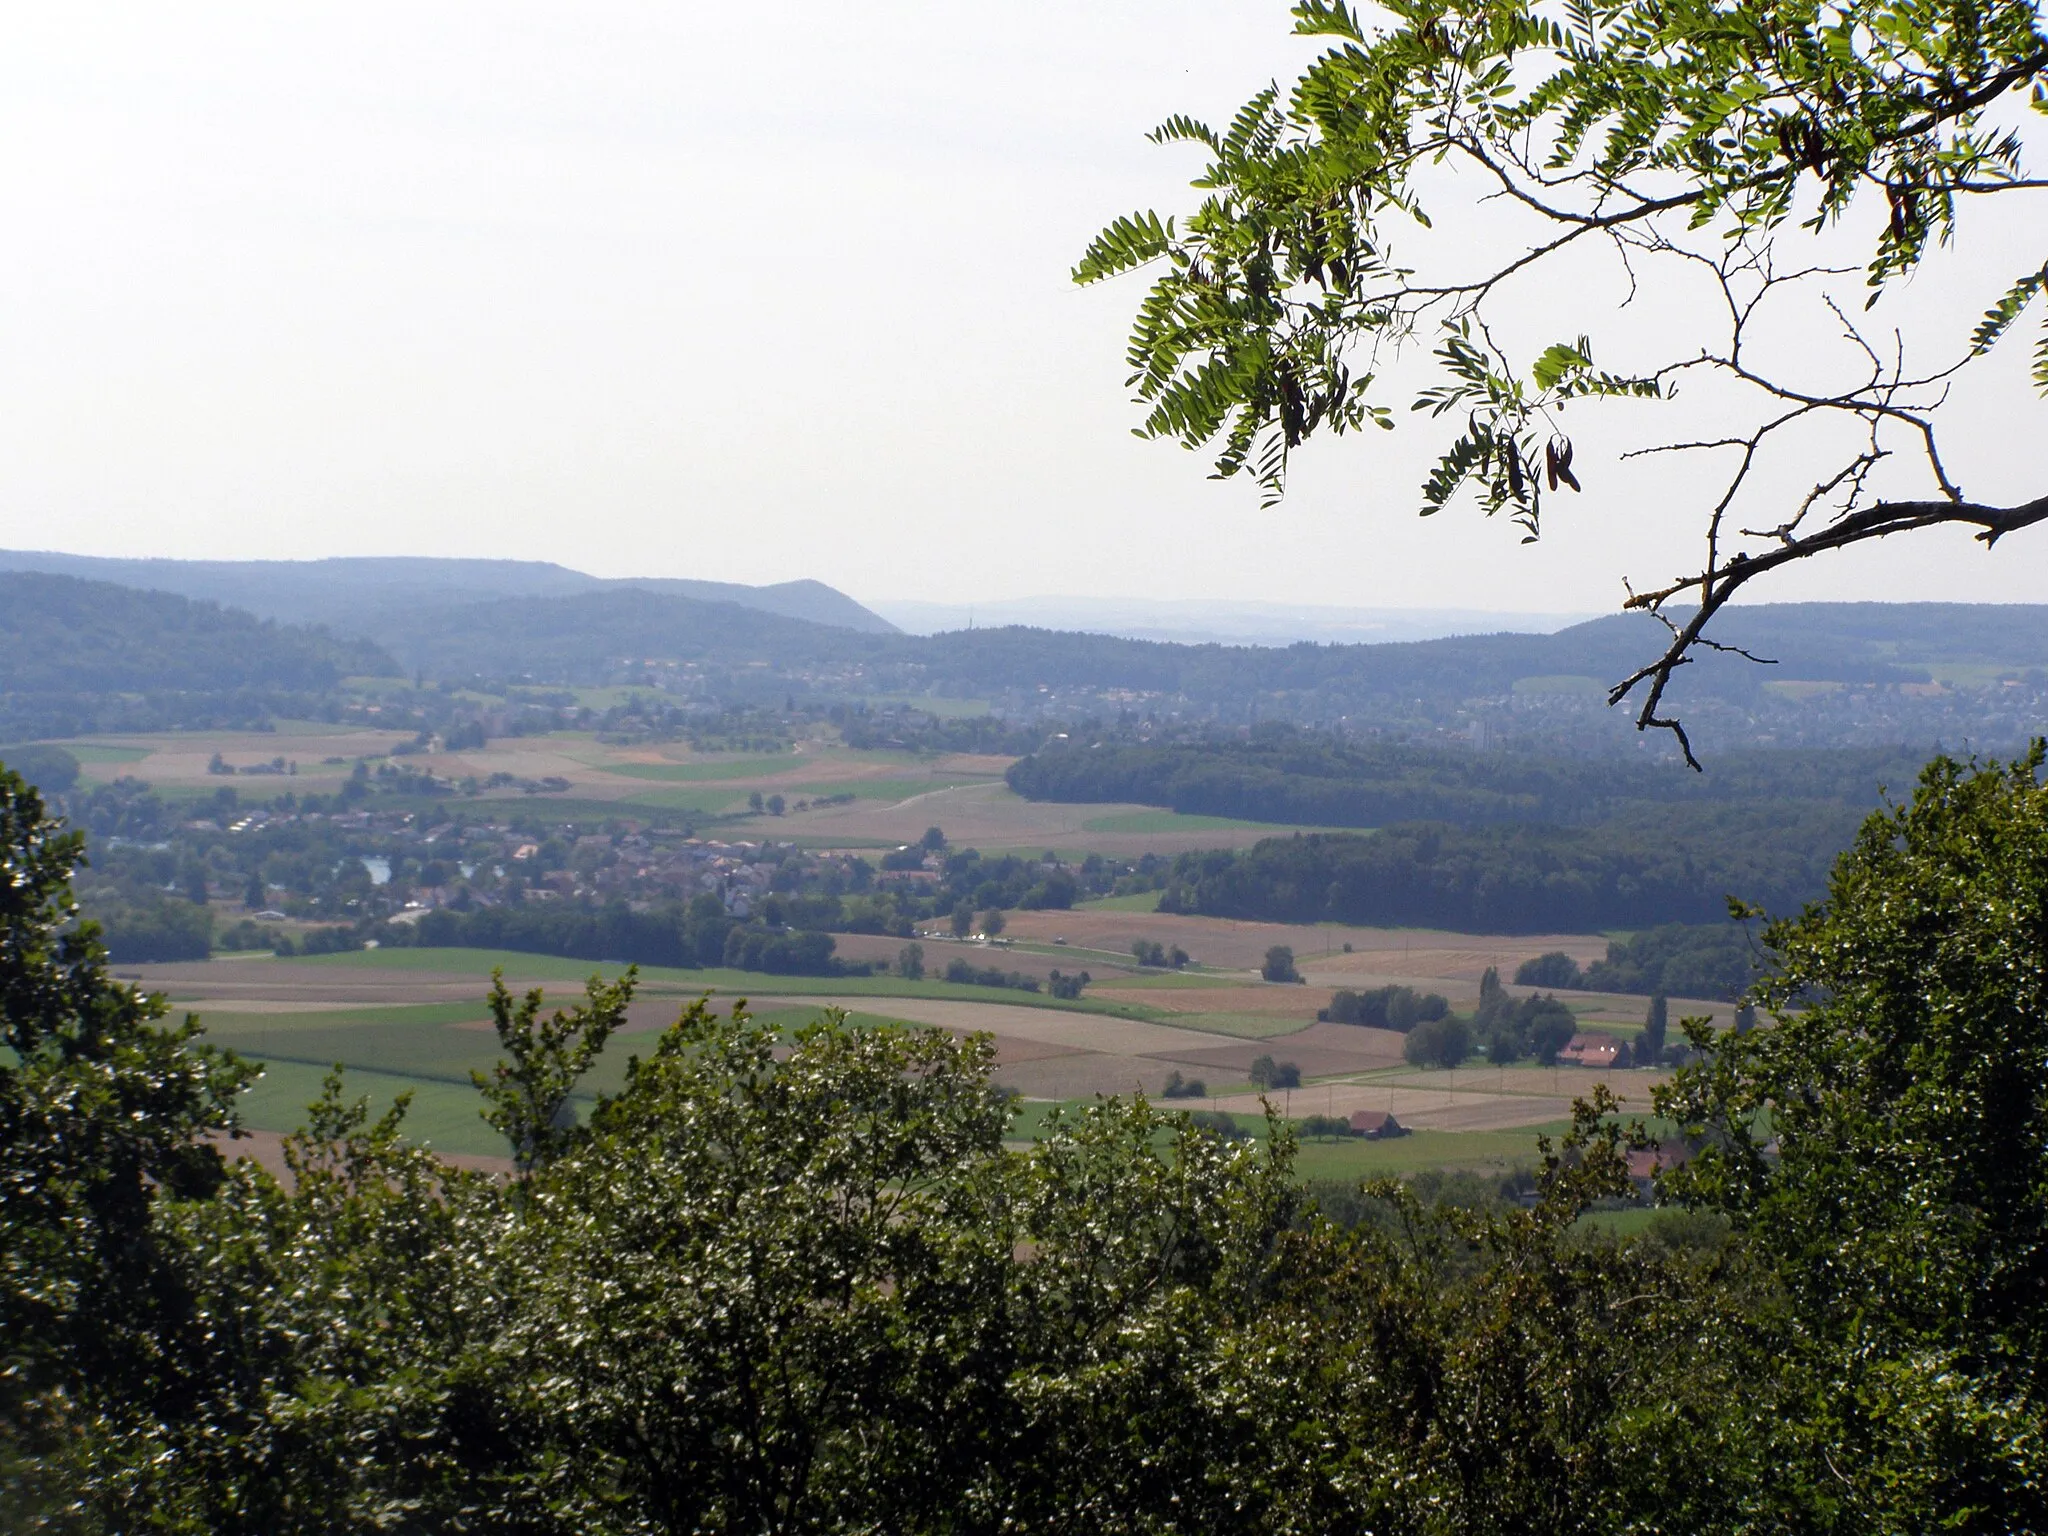 Photo showing: Aussicht vom Aussichtsturm des Bürglischlosses auf dem Rauhenberg bei Gailingen am Hochrhein in Richtung Schaffhausen, N 47.7037, E 8.7486